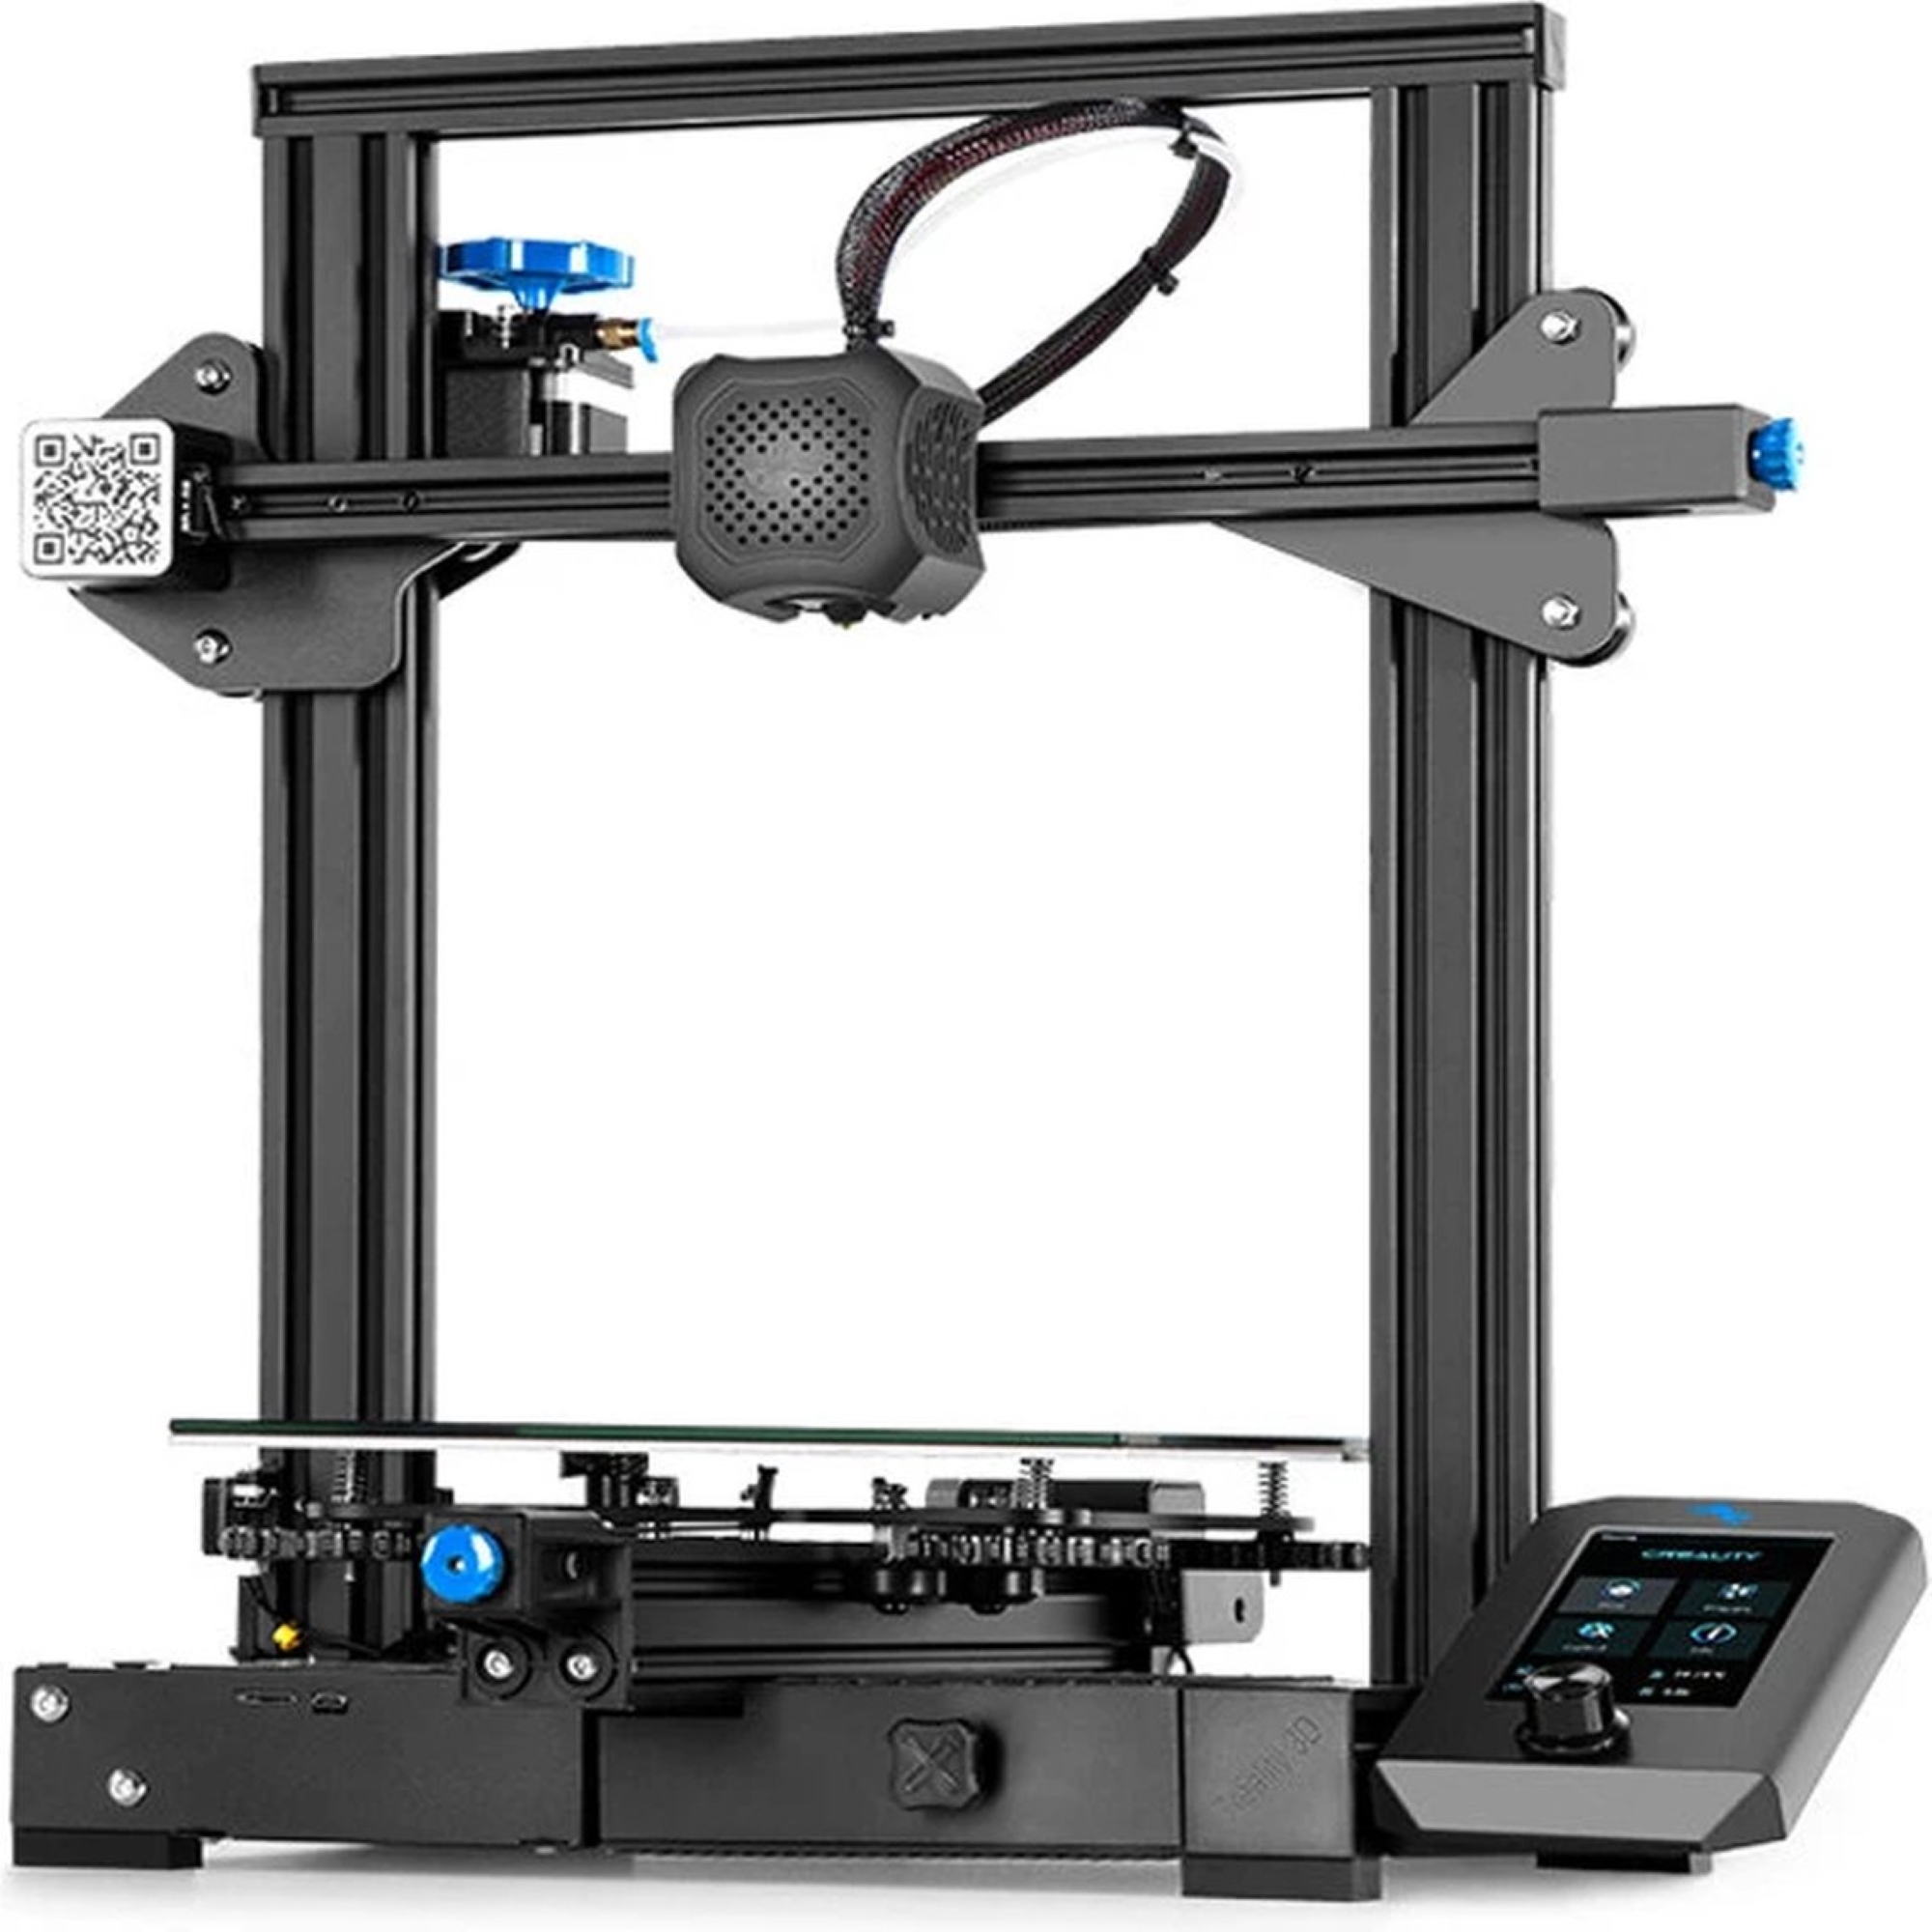 CREALITY Ender V2 Drucker FDM 3 3D Printer 3D